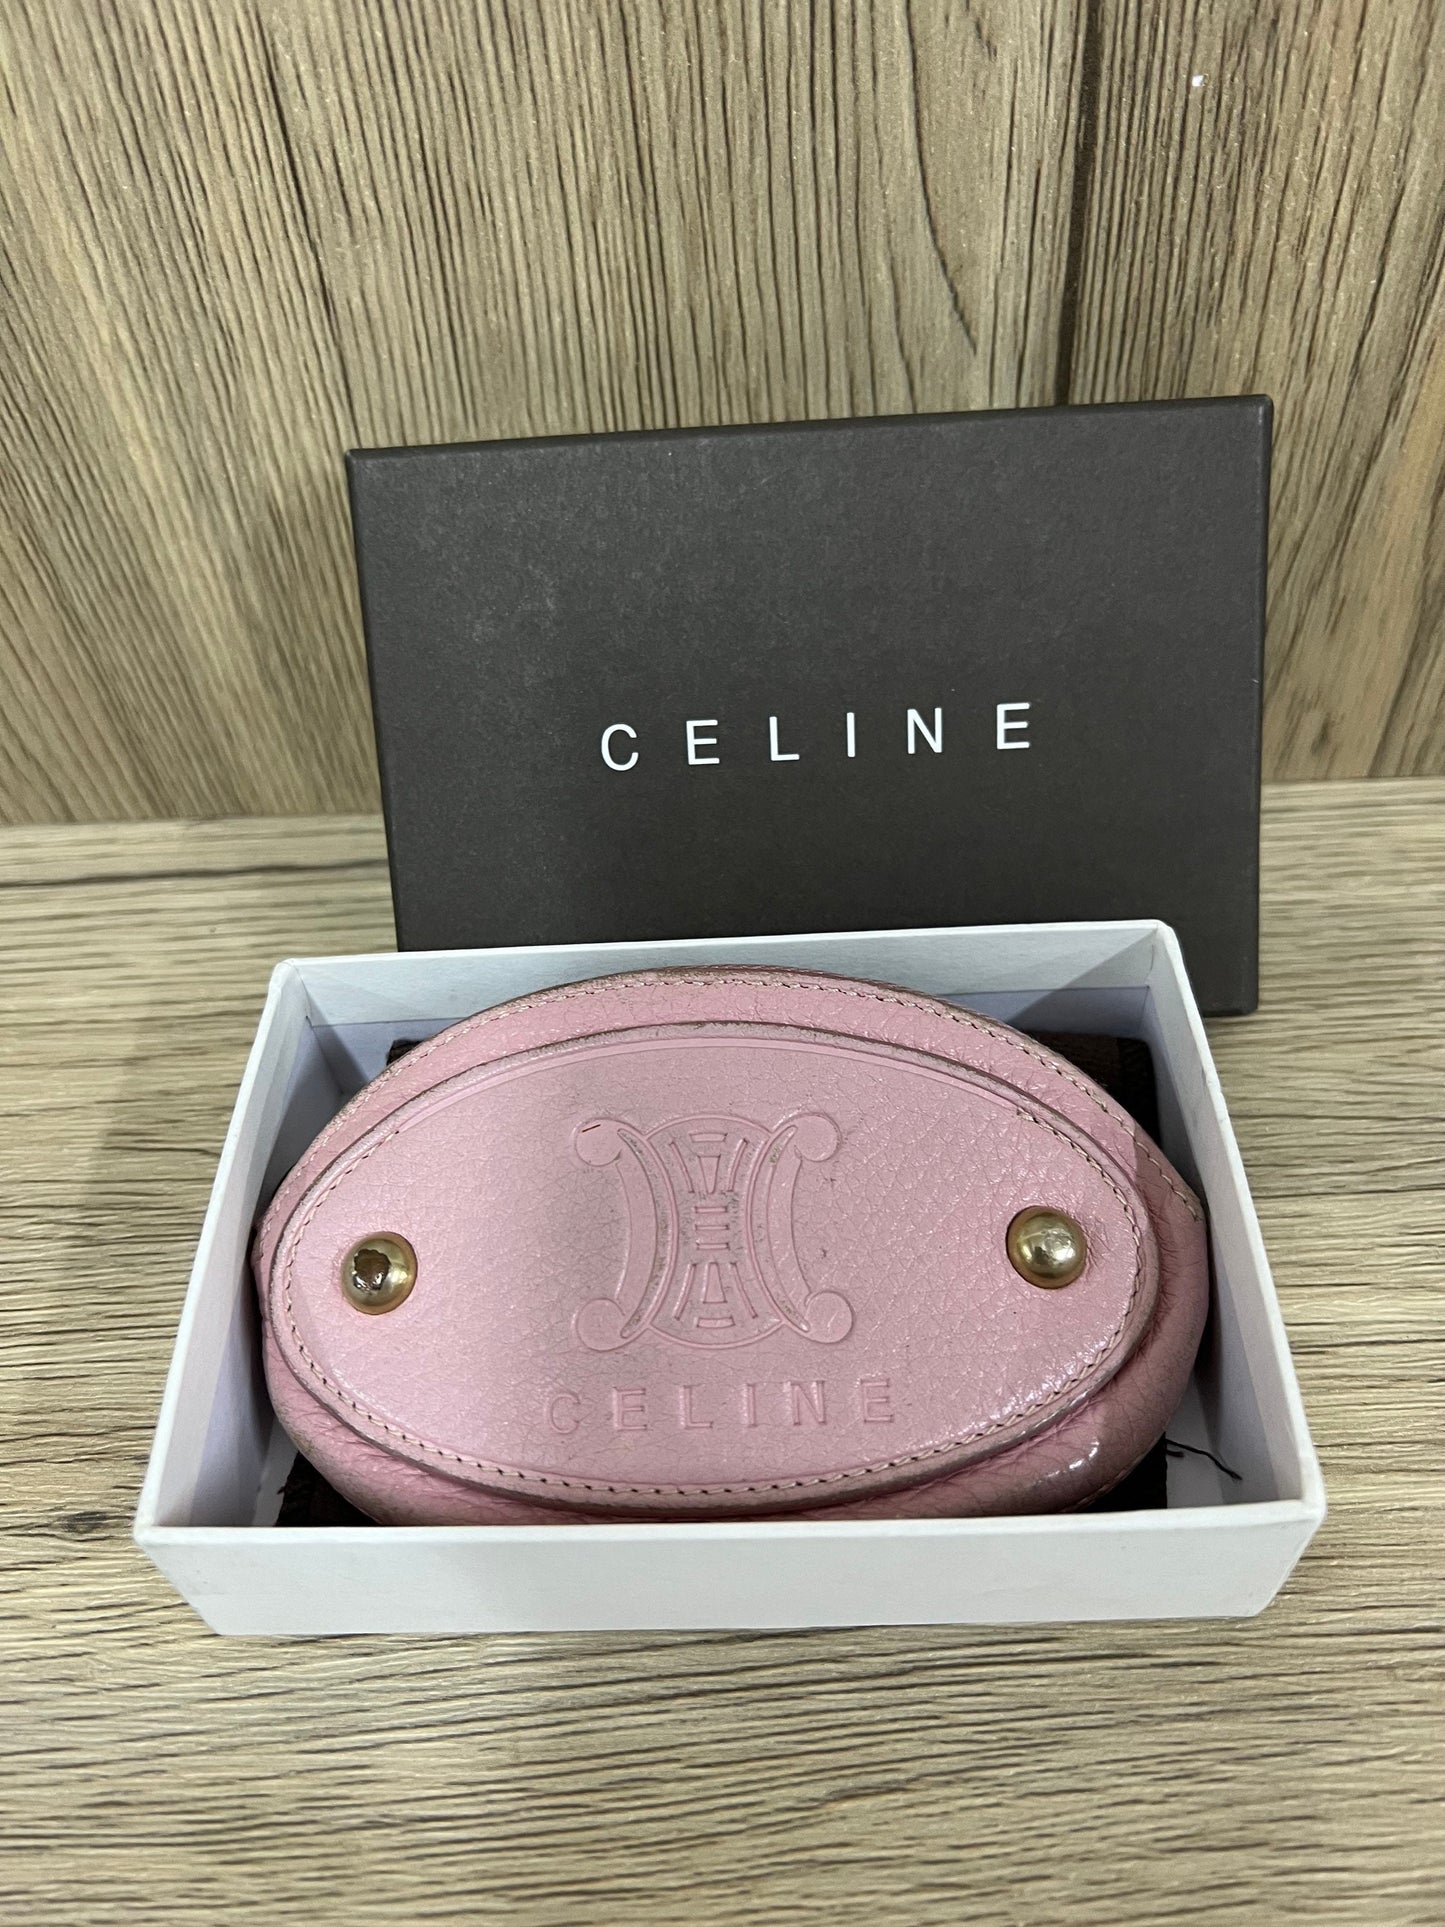 Celine 零錢包粉色 w12 x 7H cm (13 Jun 22 BBW 39 22)